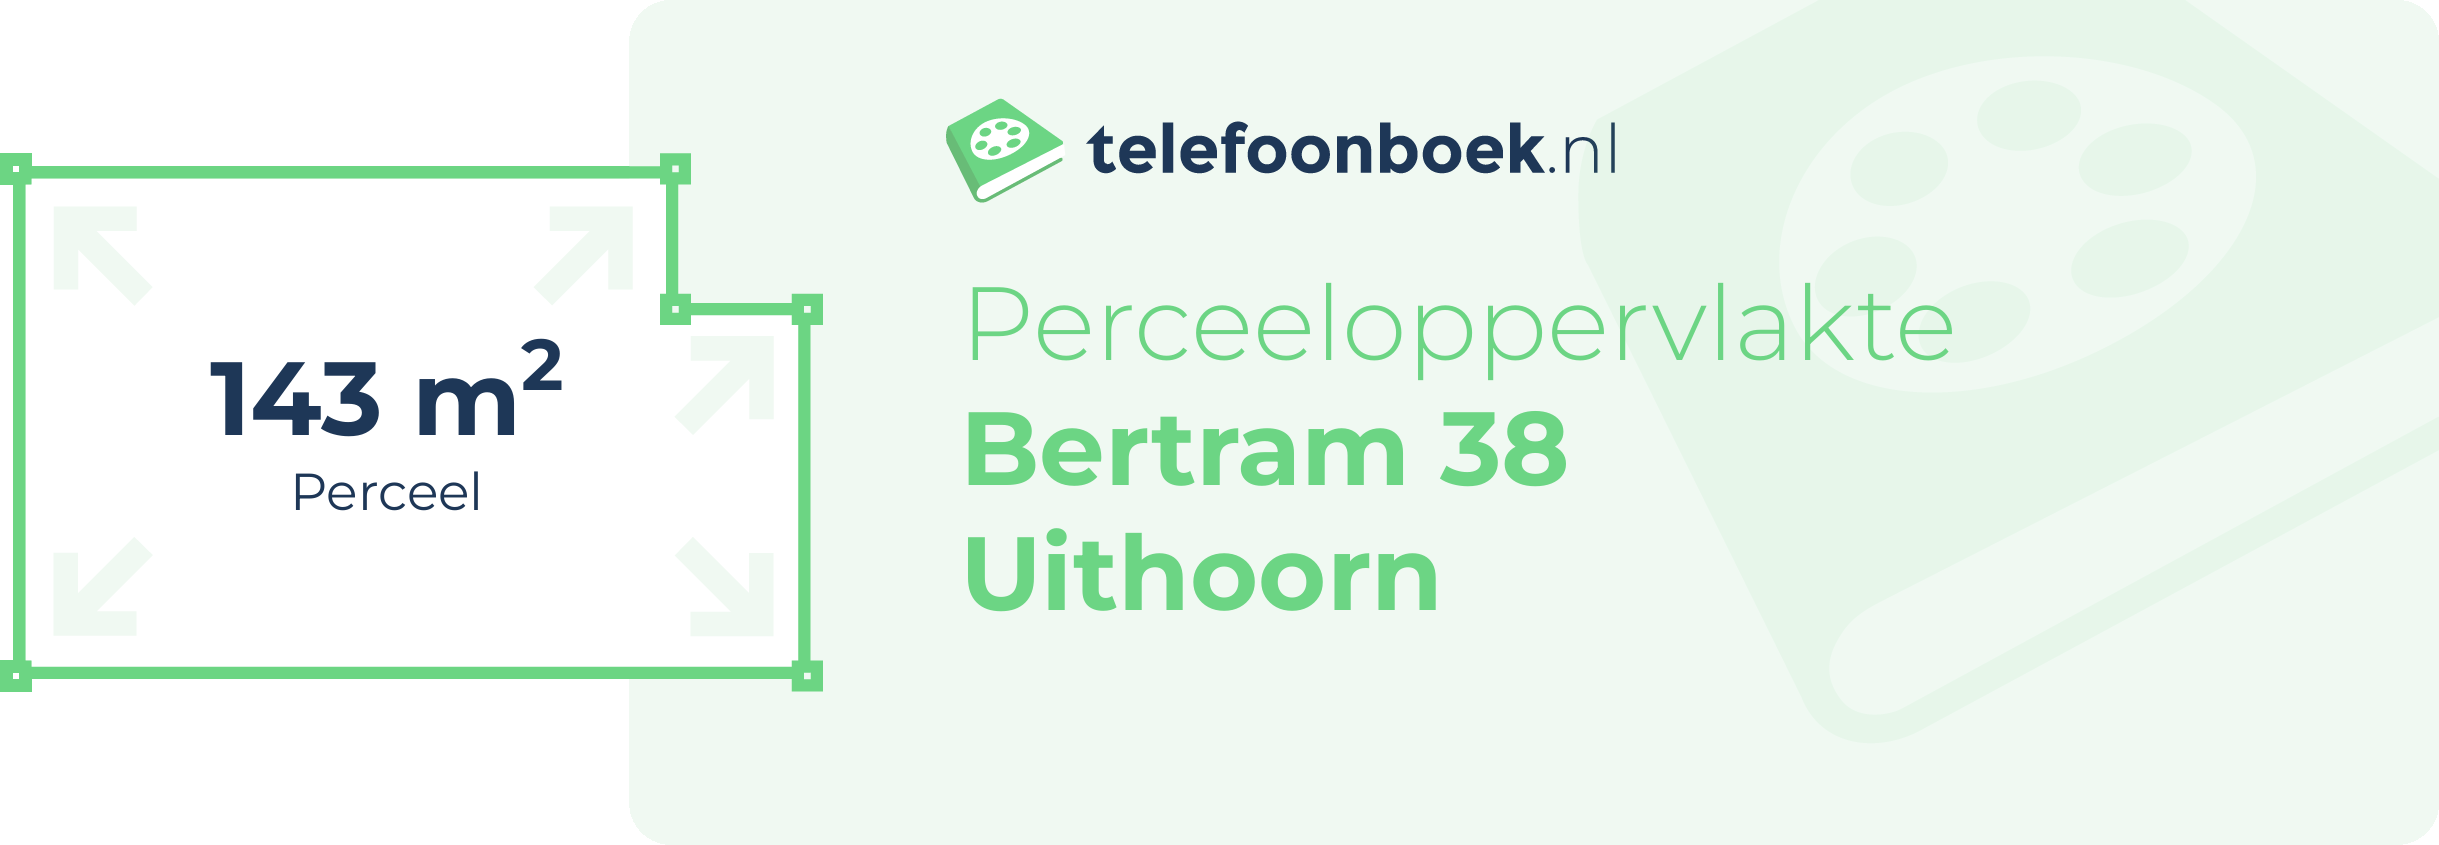 Perceeloppervlakte Bertram 38 Uithoorn